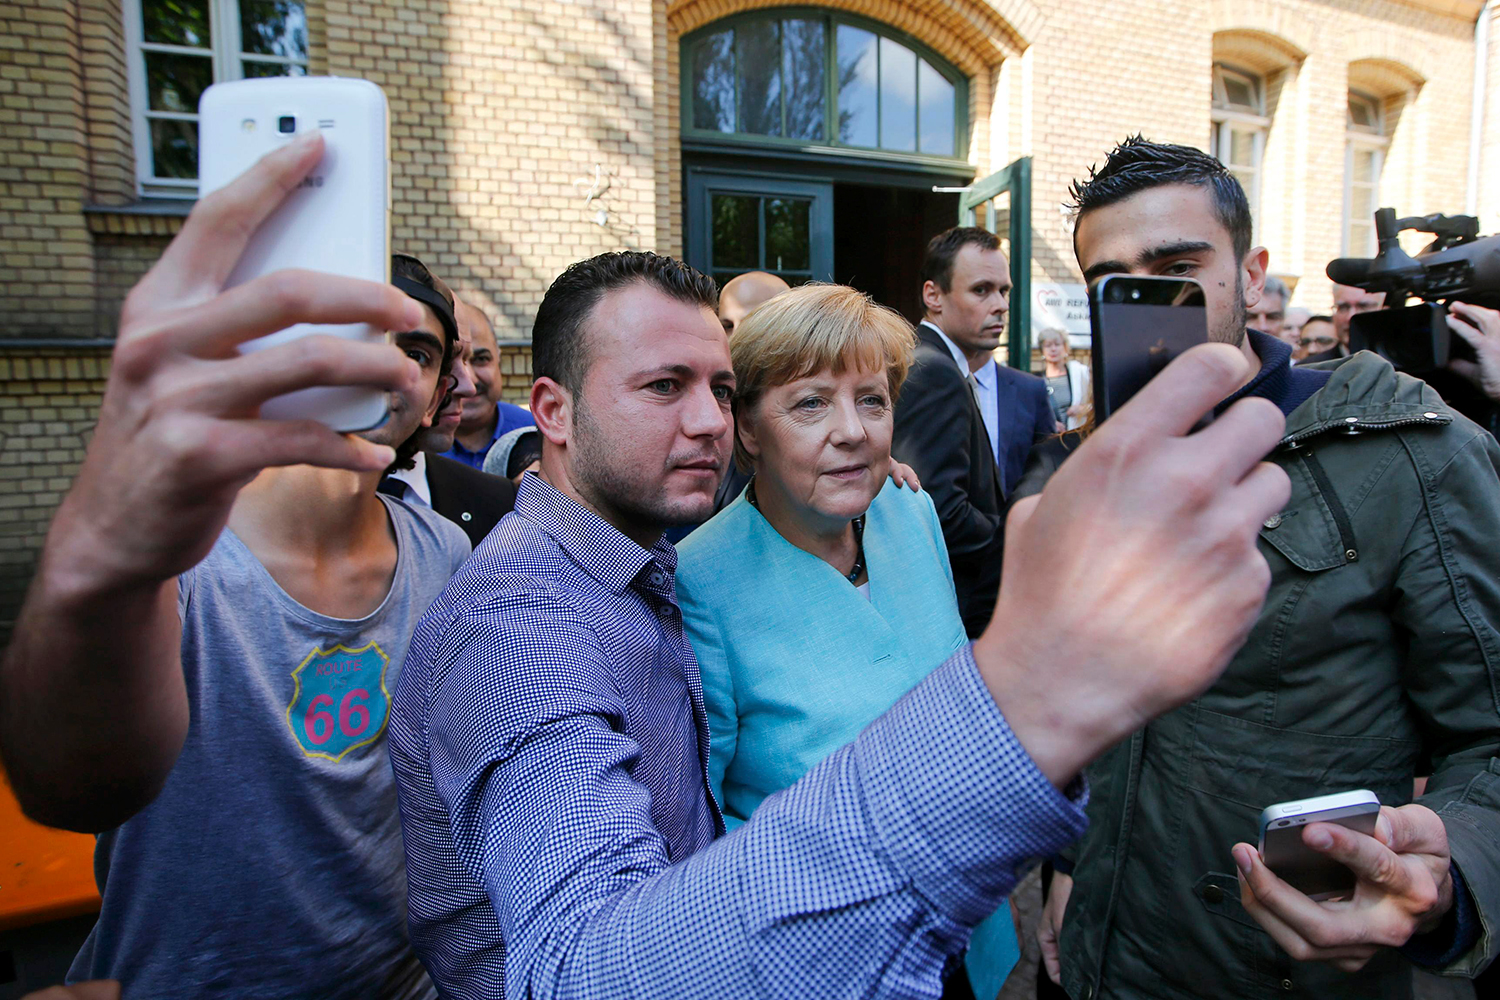 Merkel planea 'drástica reducción' de inmigrantes en Alemania